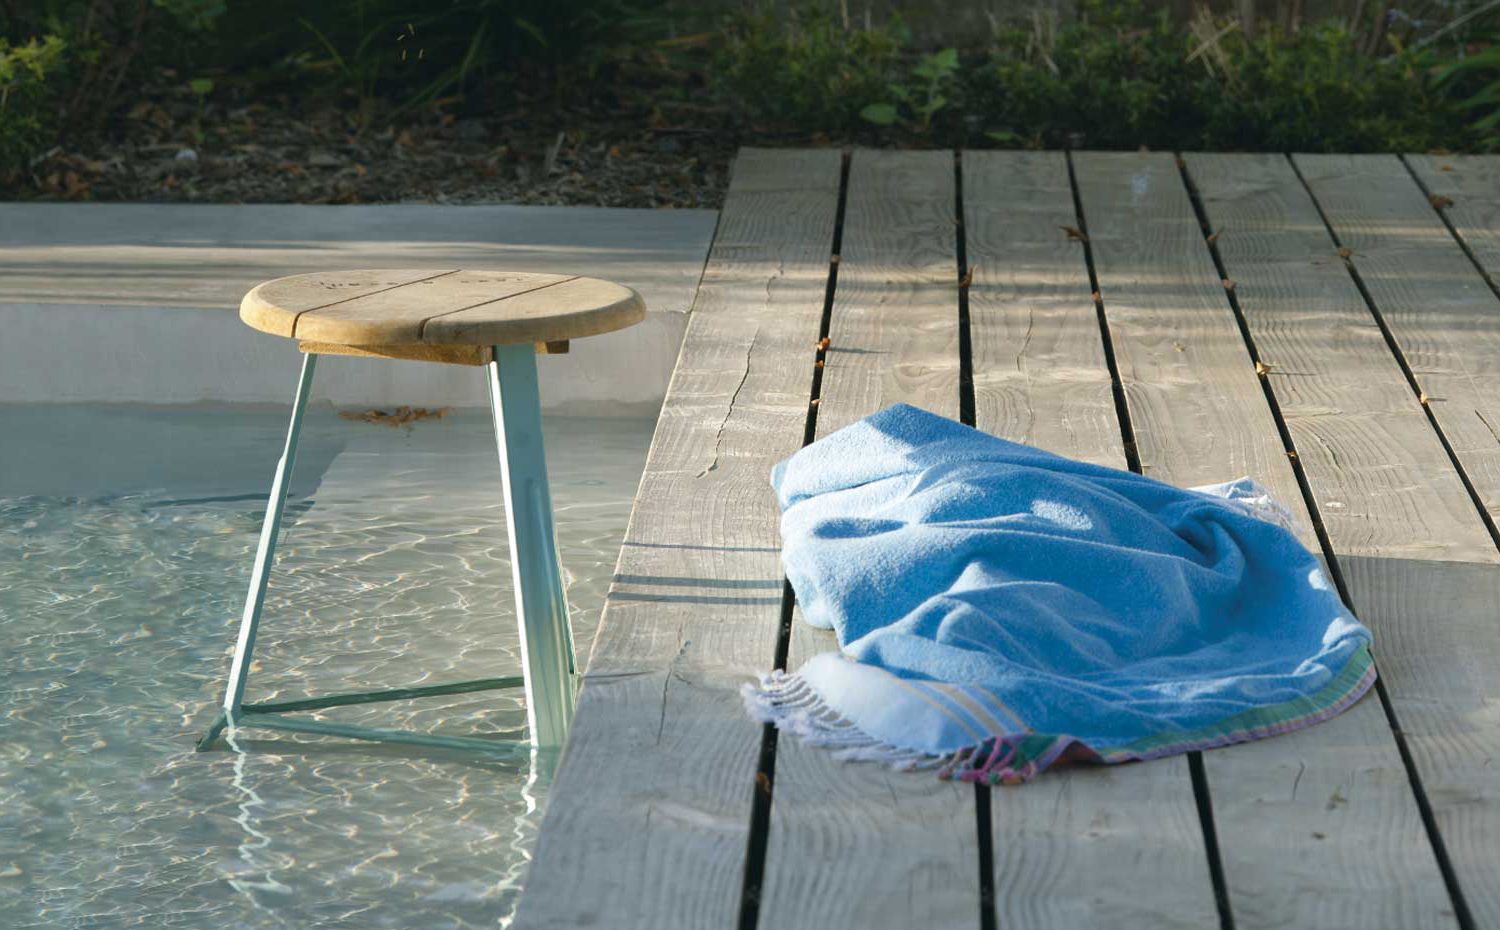 Los pavimentos que rodean la corona de la piscina deben revestirse con productos antideslizantes, como estos tablones de madera